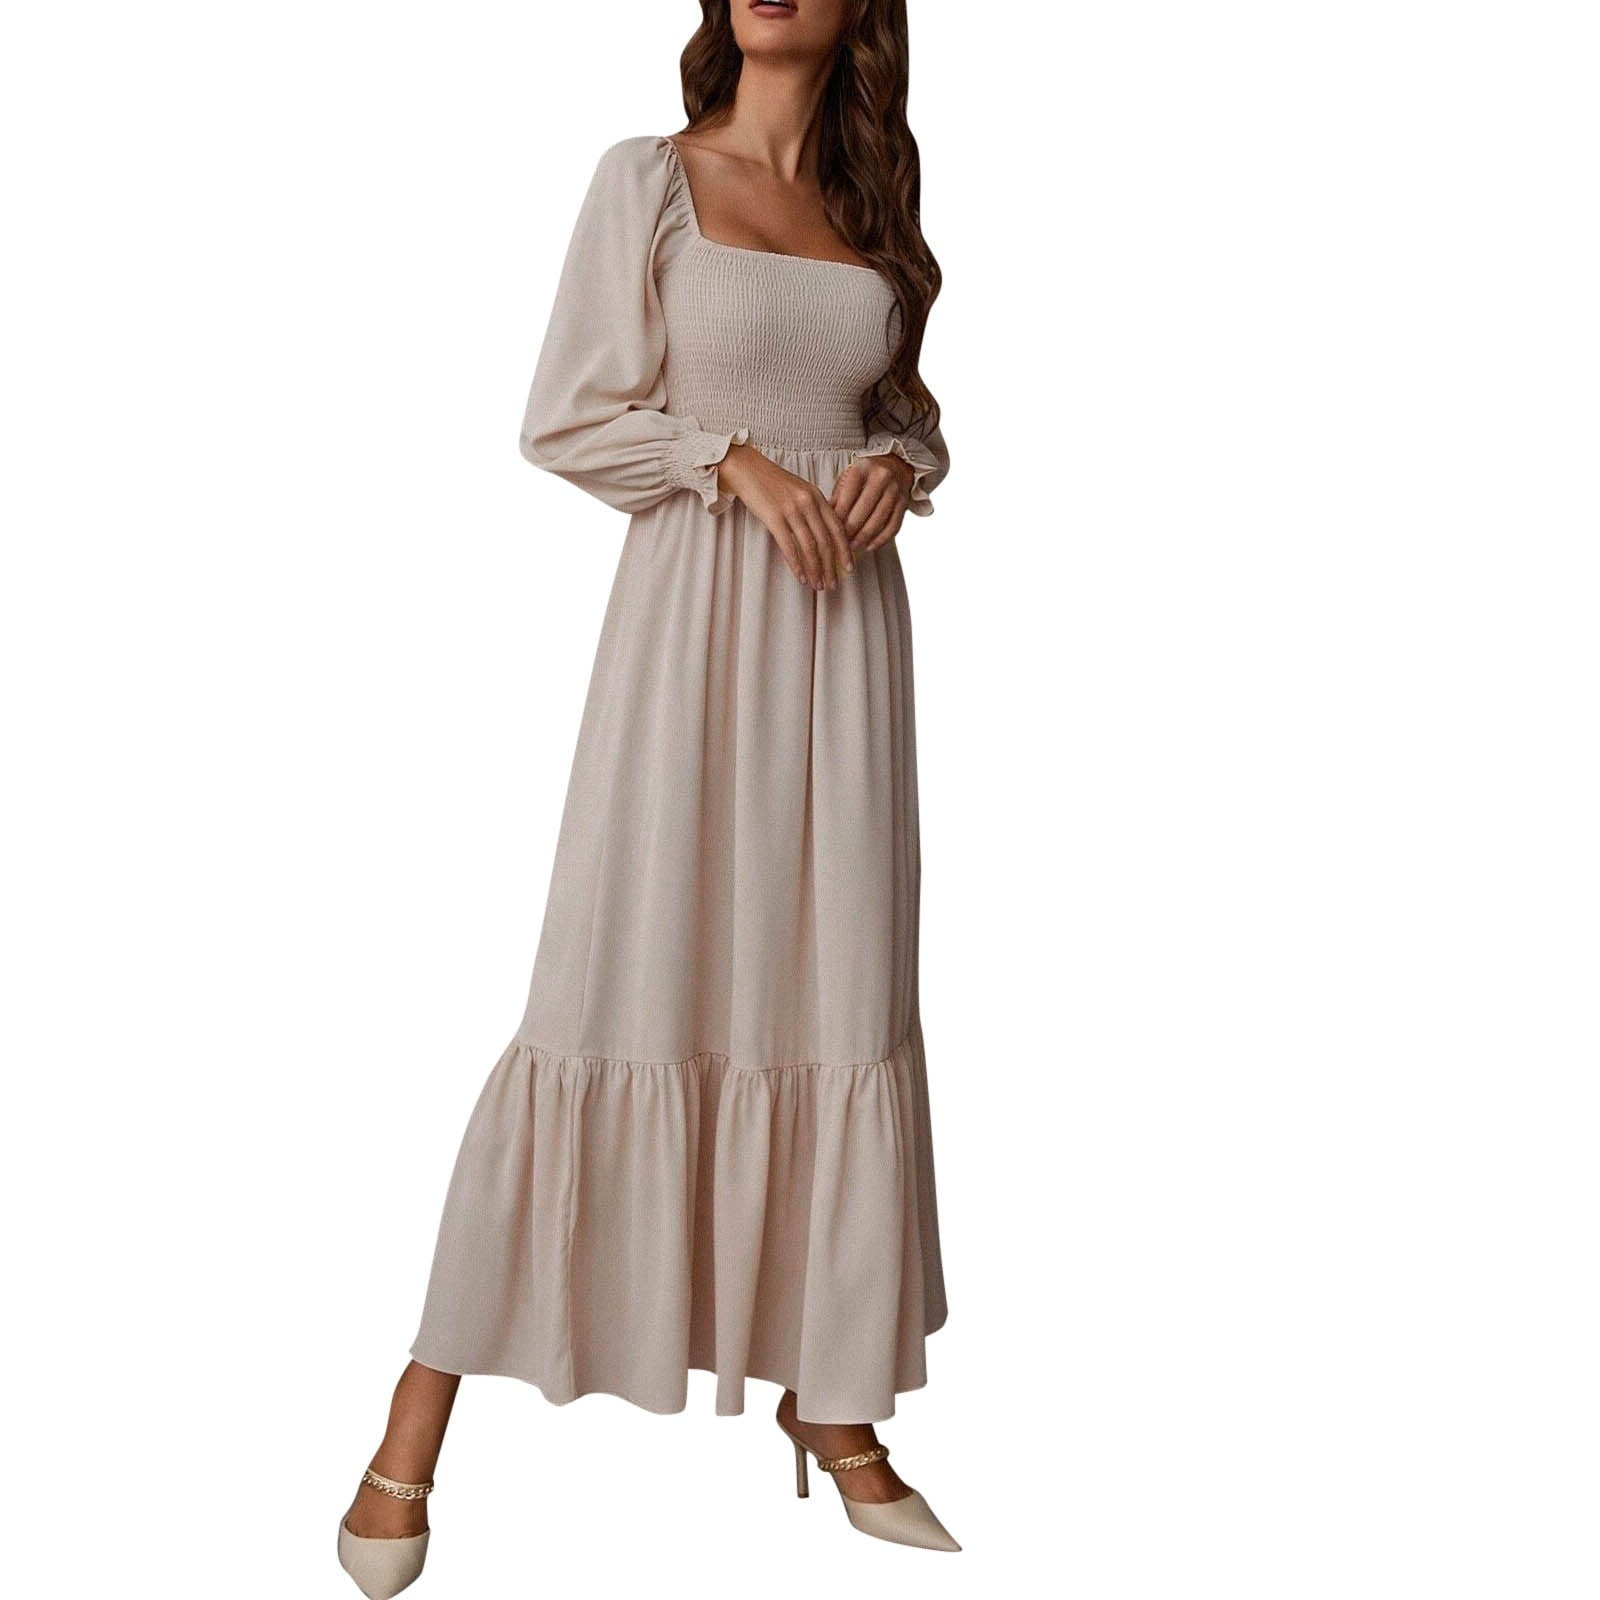 ASEIDFNSA Short Sleeve Dress for Women Cute Short Dresses Elastic